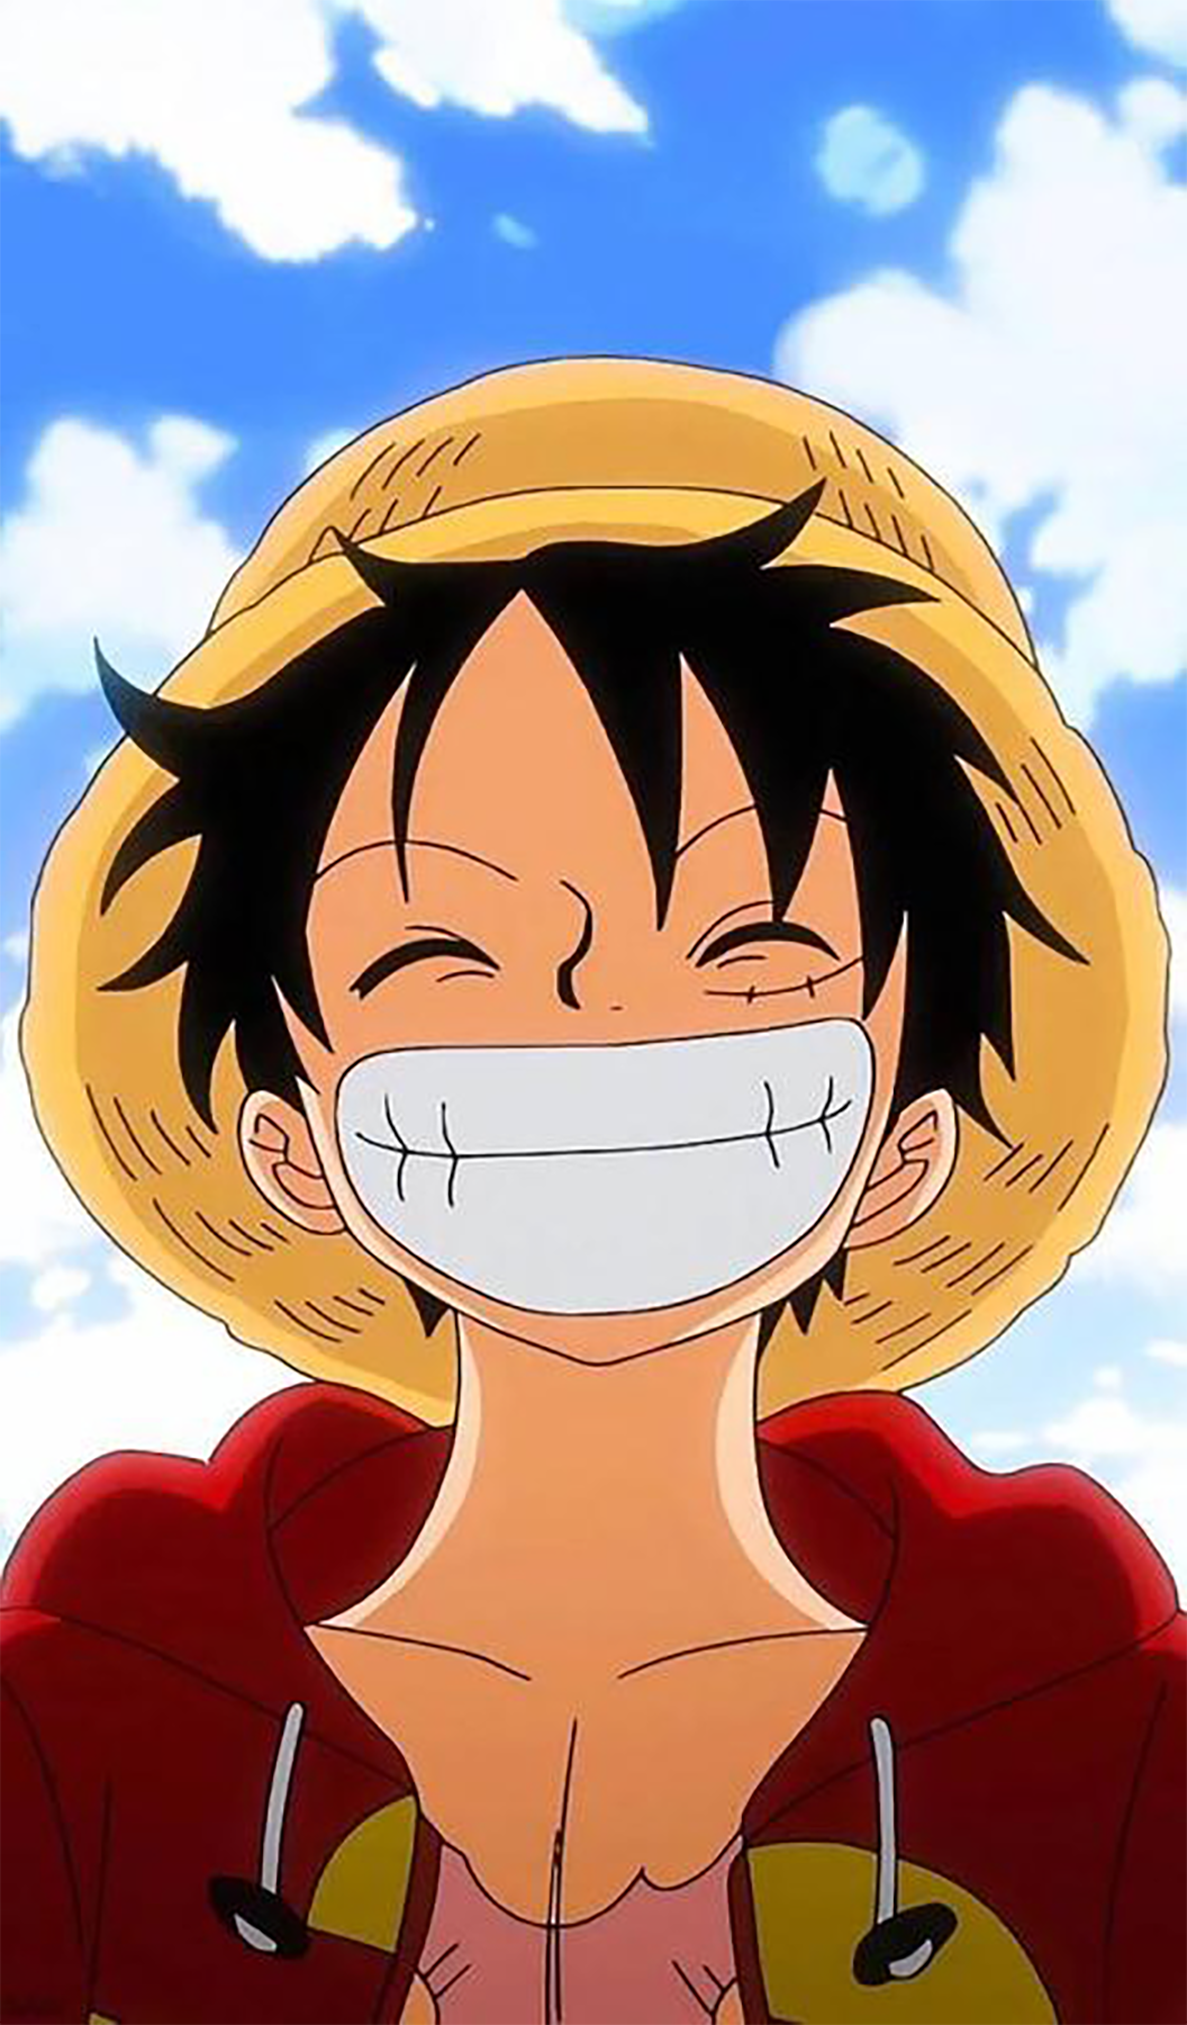 Hình Luffy cute đáng yêu đến muốn ôm chặt luôn! Với cặp mắt to tròn, nụ cười híp mắt và vẻ ngoài tinh nghịch, chắc chắn bạn sẽ không thể cưỡng lại được sức hút của bức hình này.